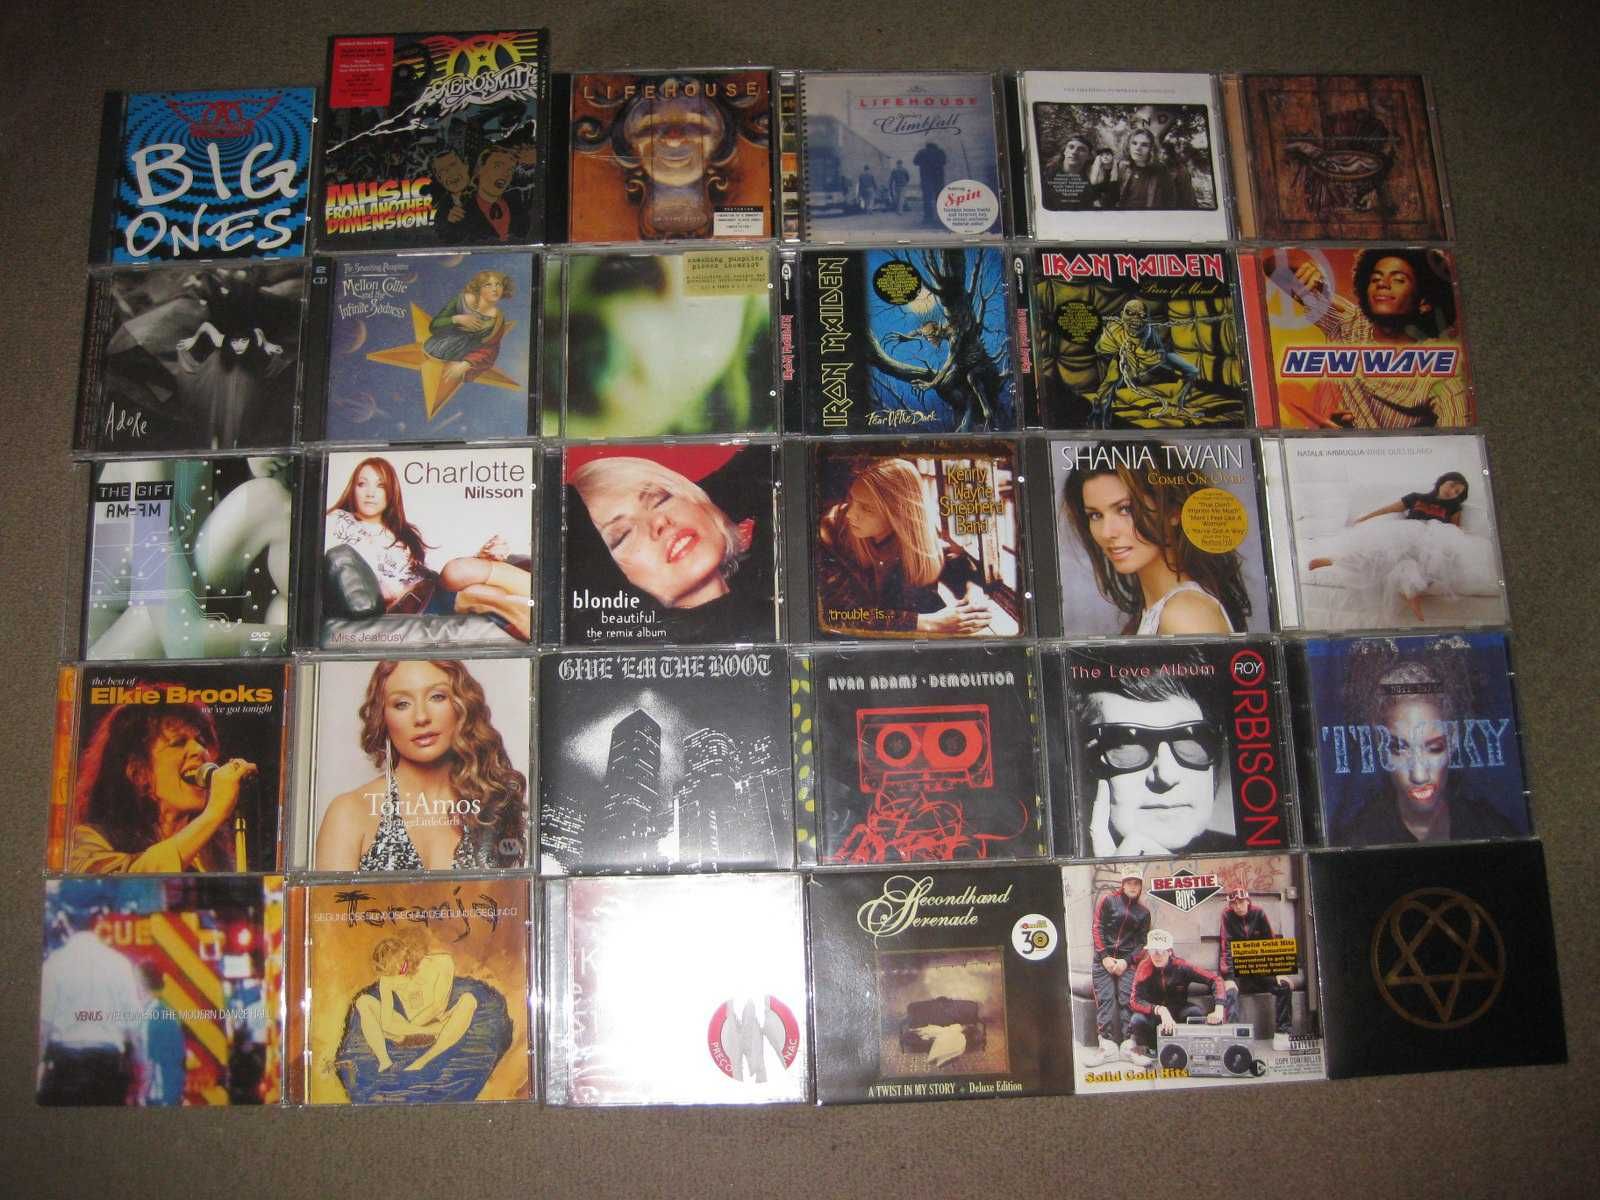 Excelente Lote de 90 CDs- Portes Grátis!